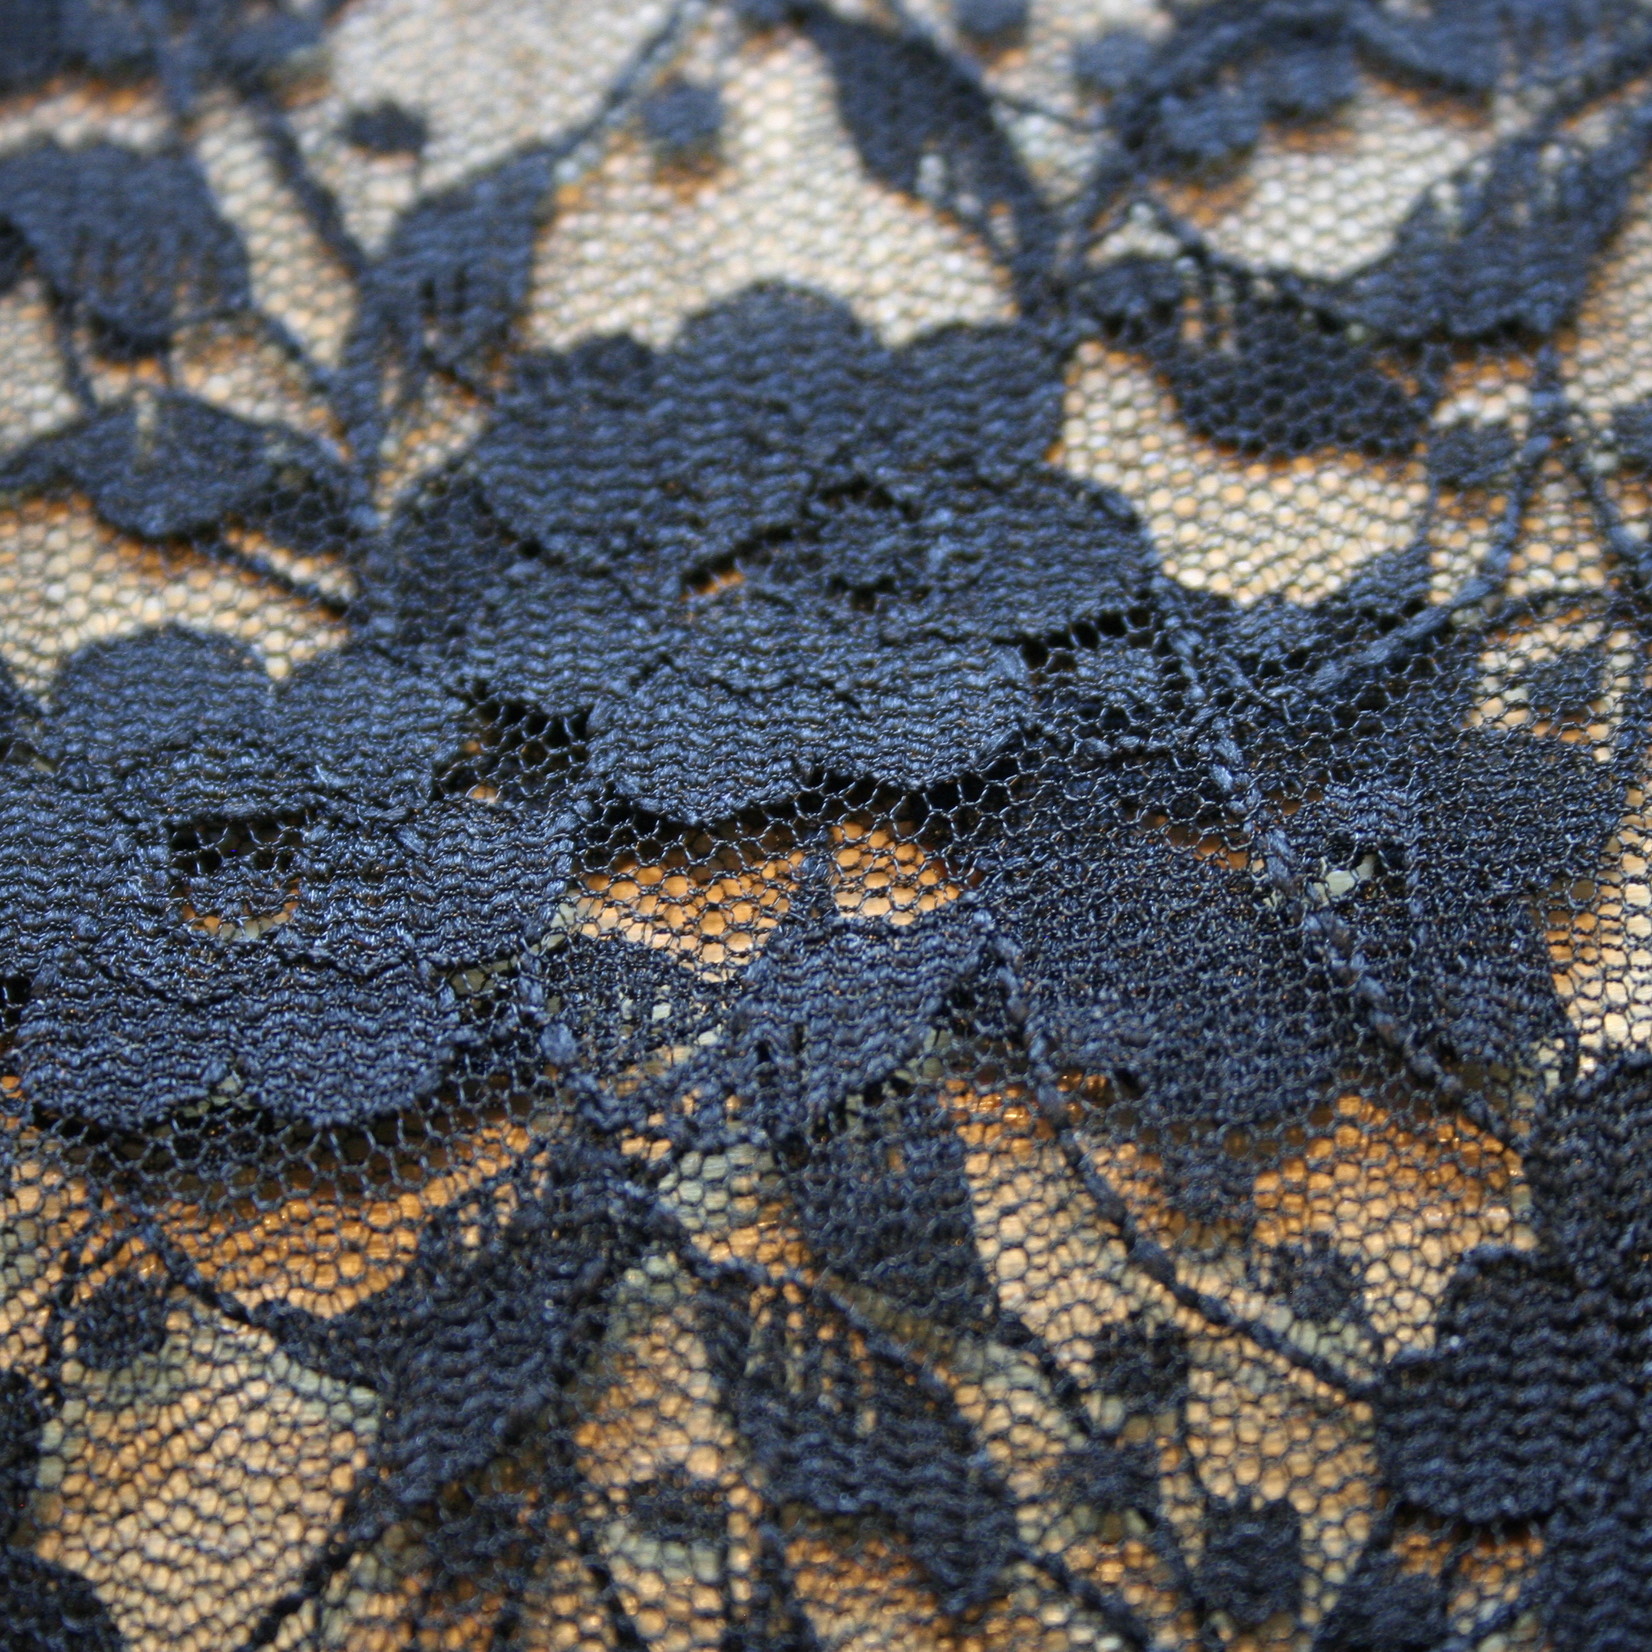 Black floral lace.